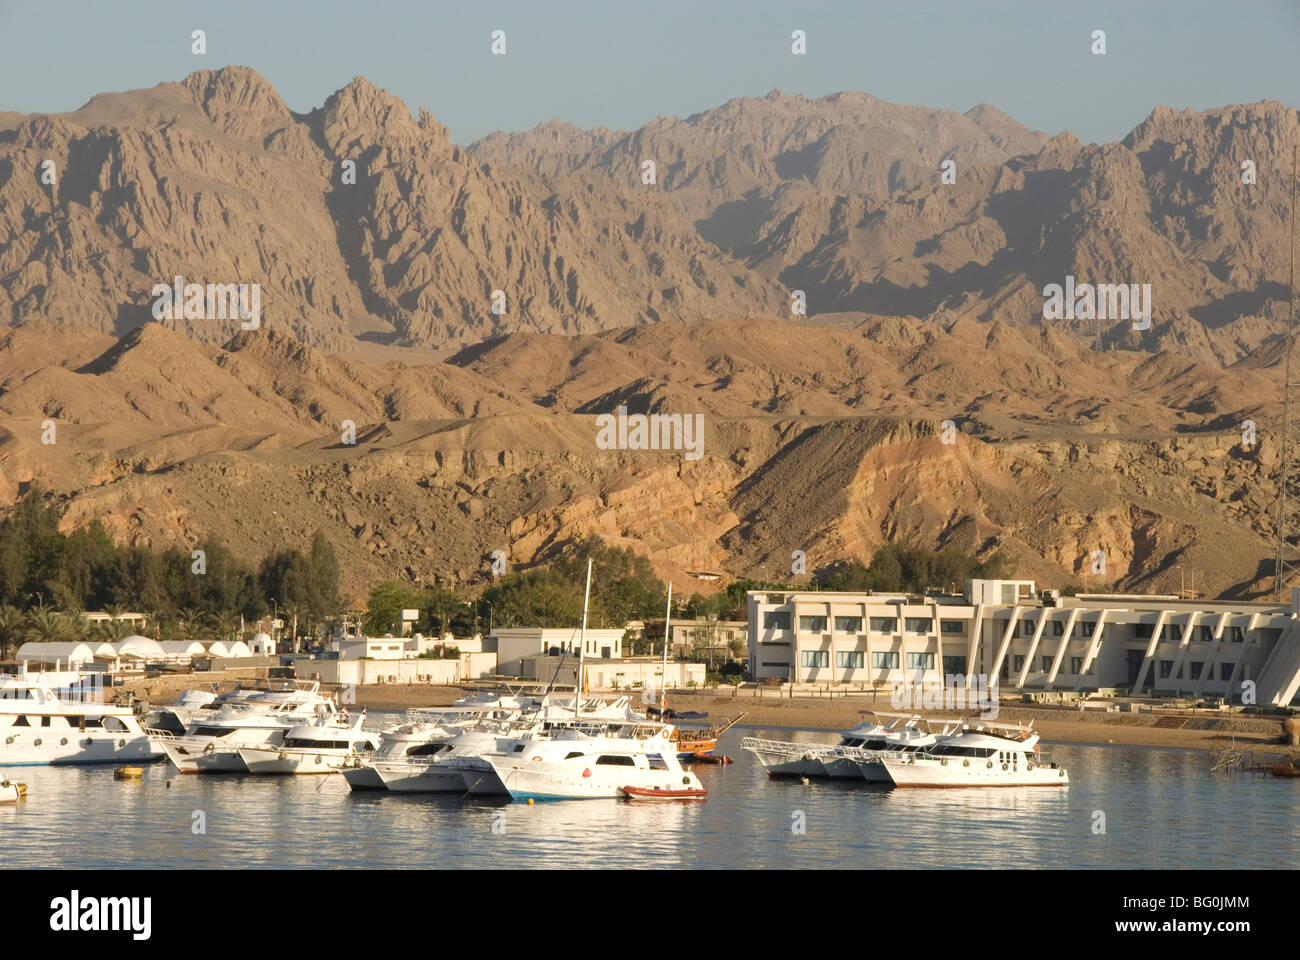 Hafen und Marina vor kahlen Berge, Sharm el Sheikh, Sinai-Halbinsel, Golf von Aqaba, Rotes Meer, Ägypten, Nordafrika Stockfoto